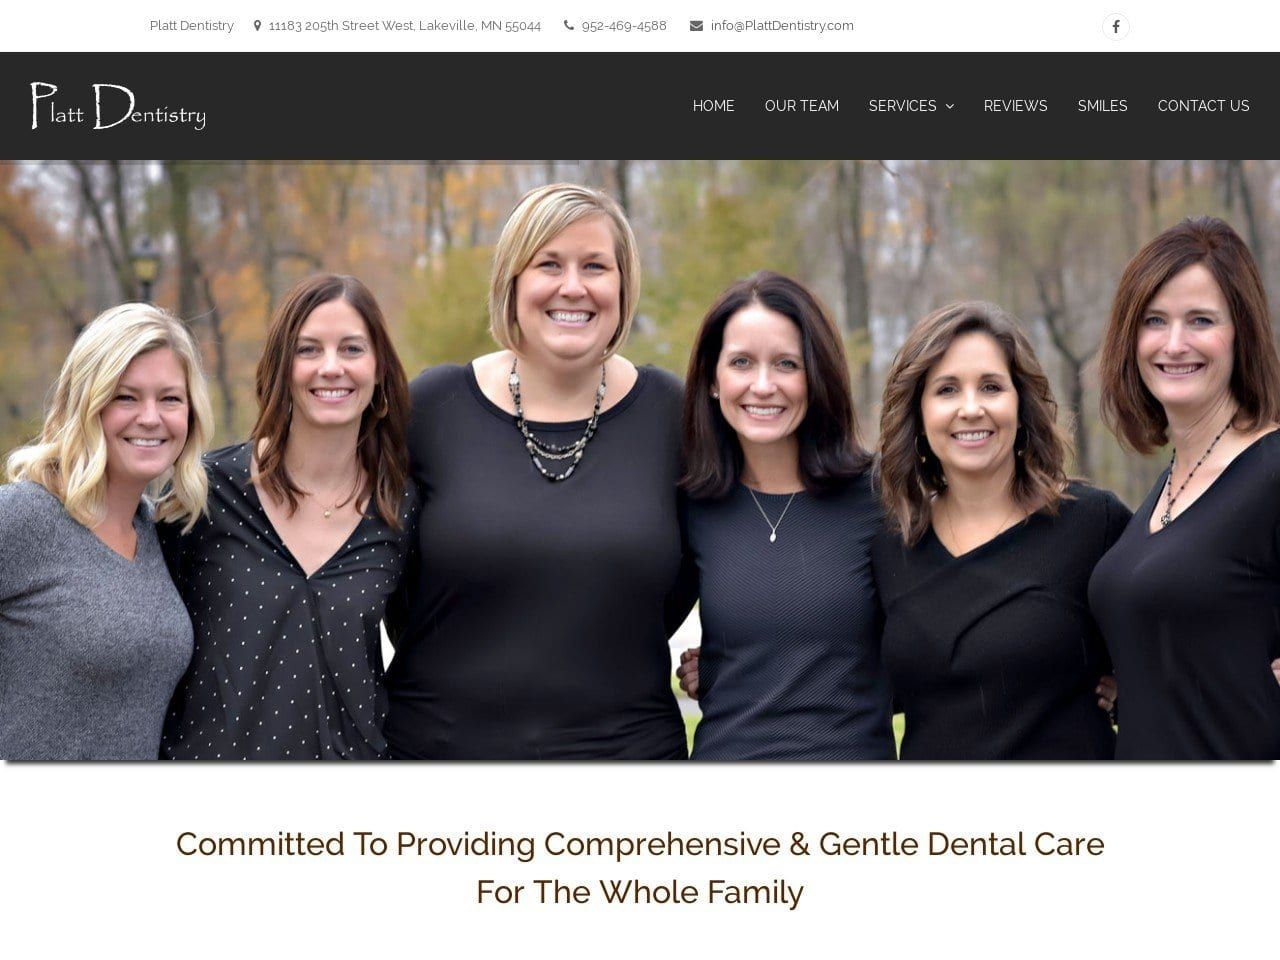 Platt Dentist Website Screenshot from plattdentistry.com